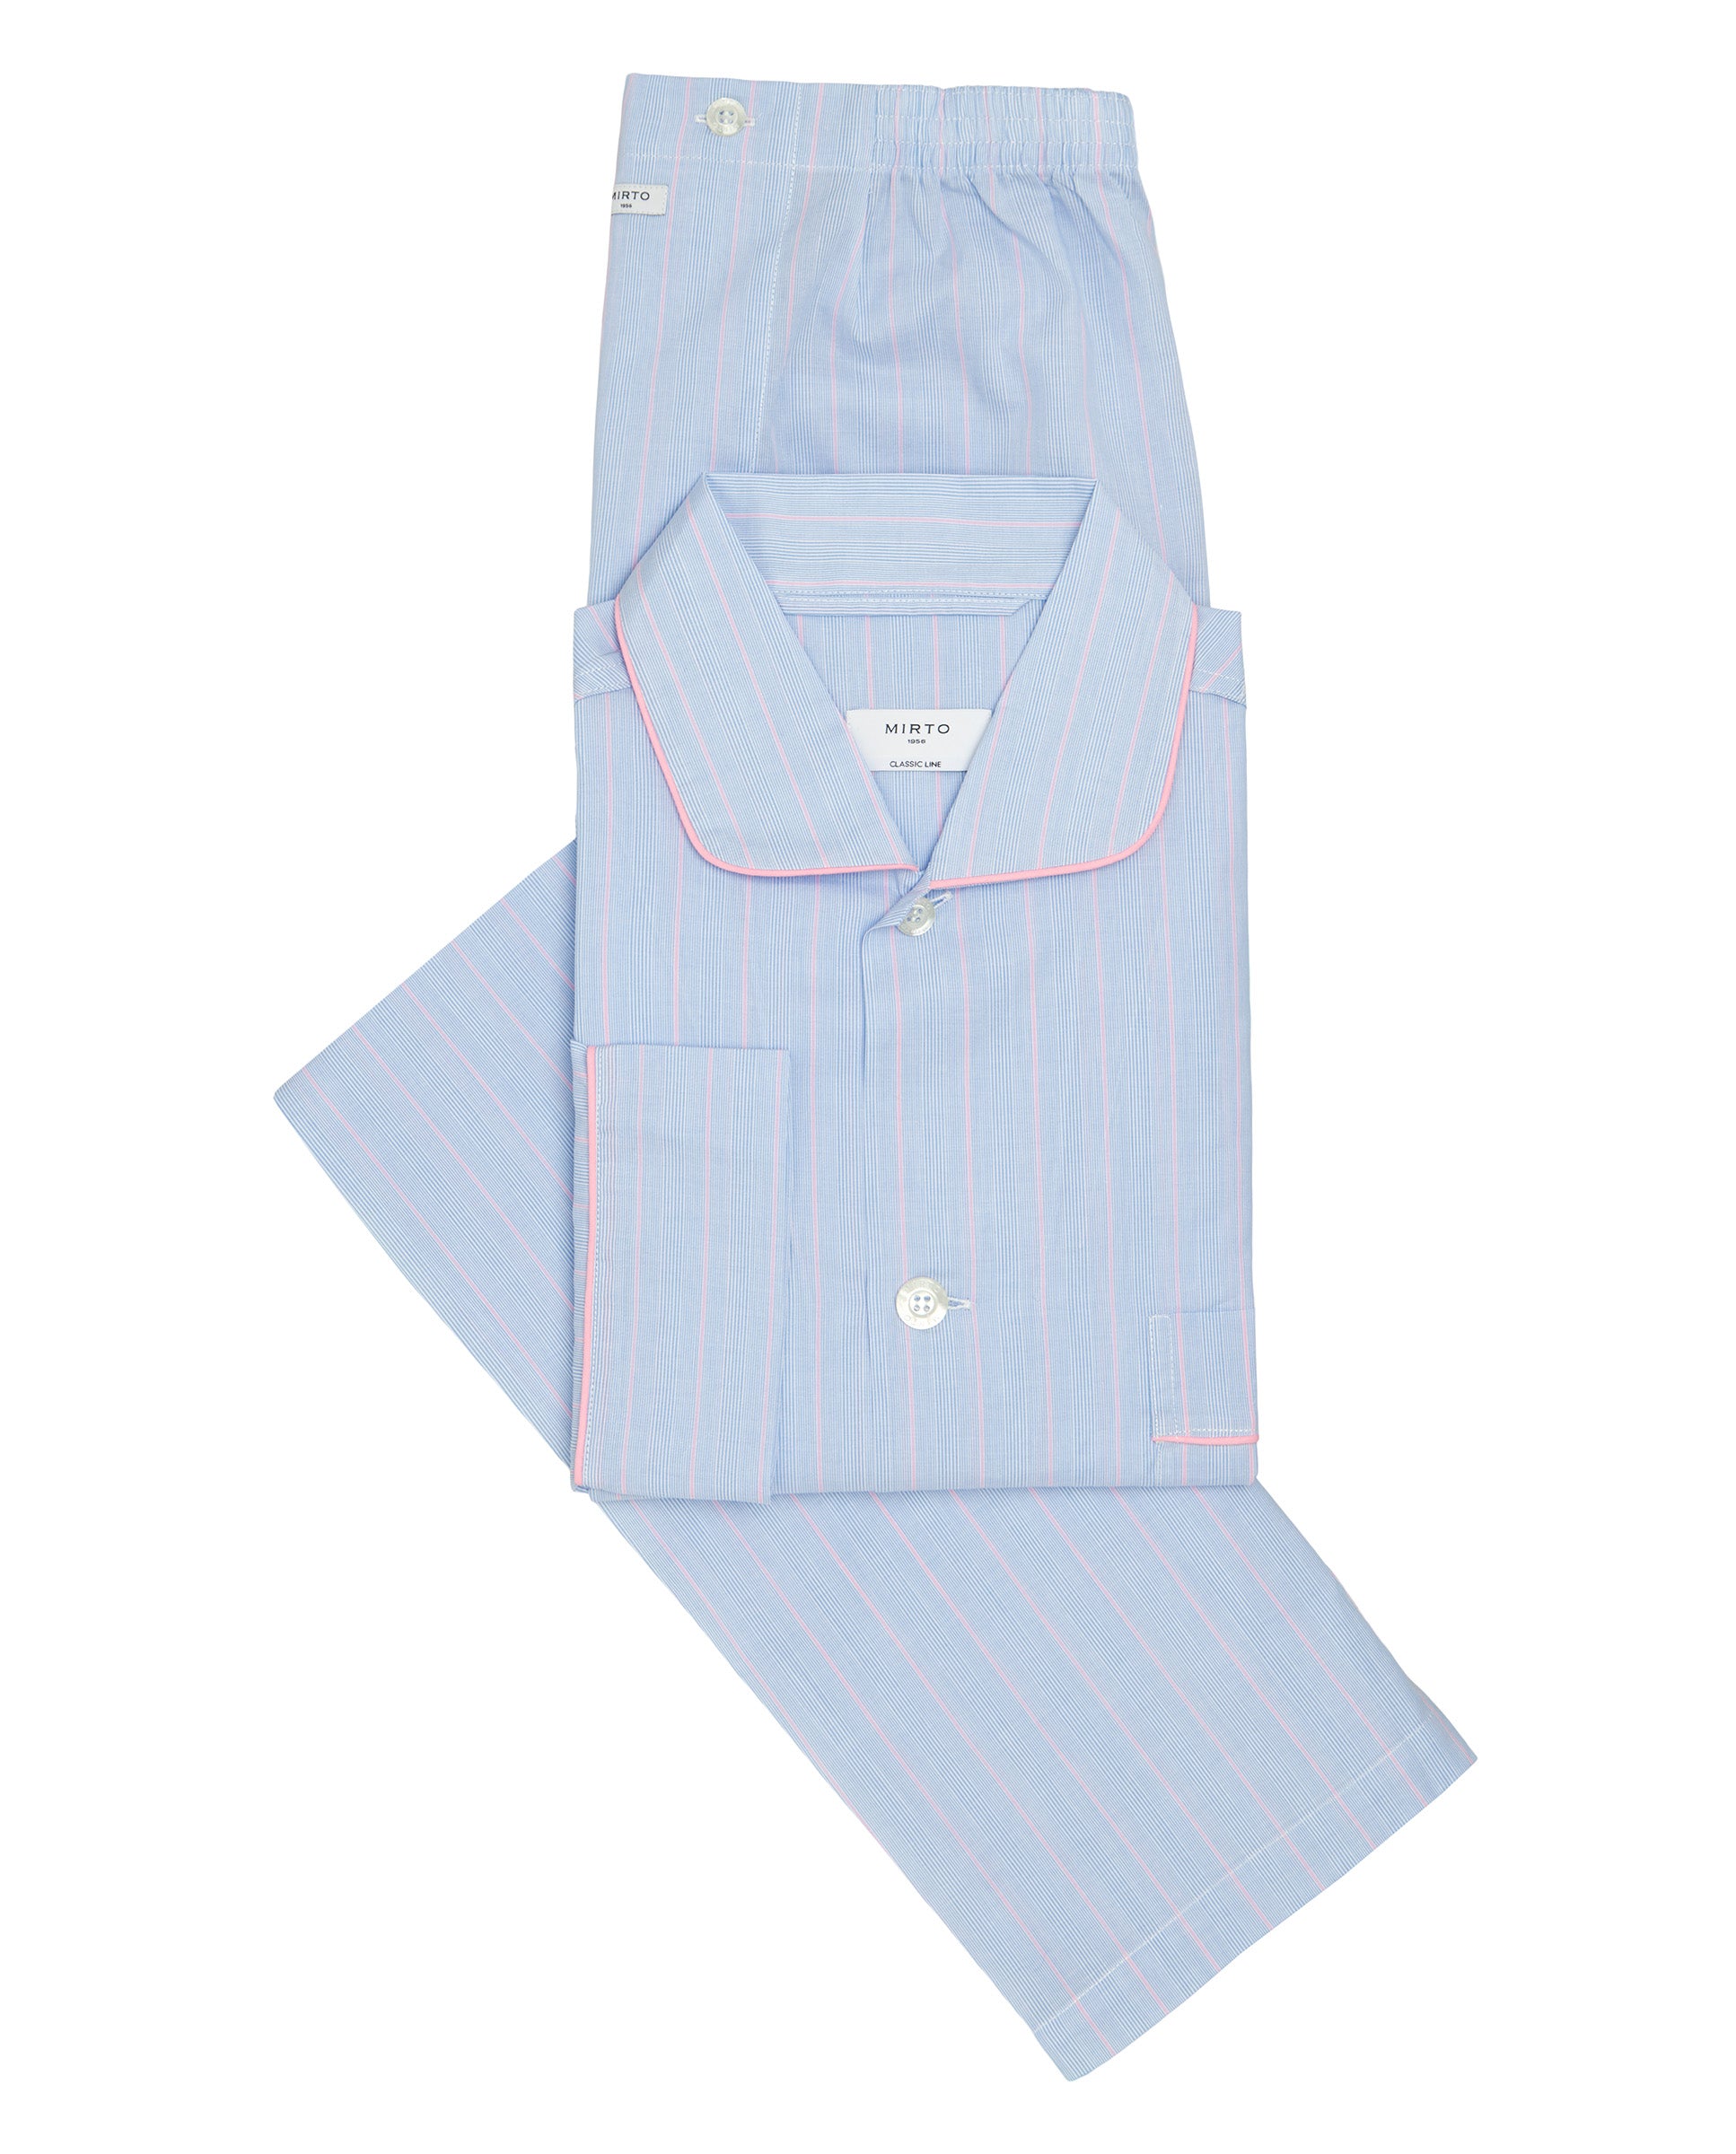 Light blue cotton striped long pajamas by MIRTO